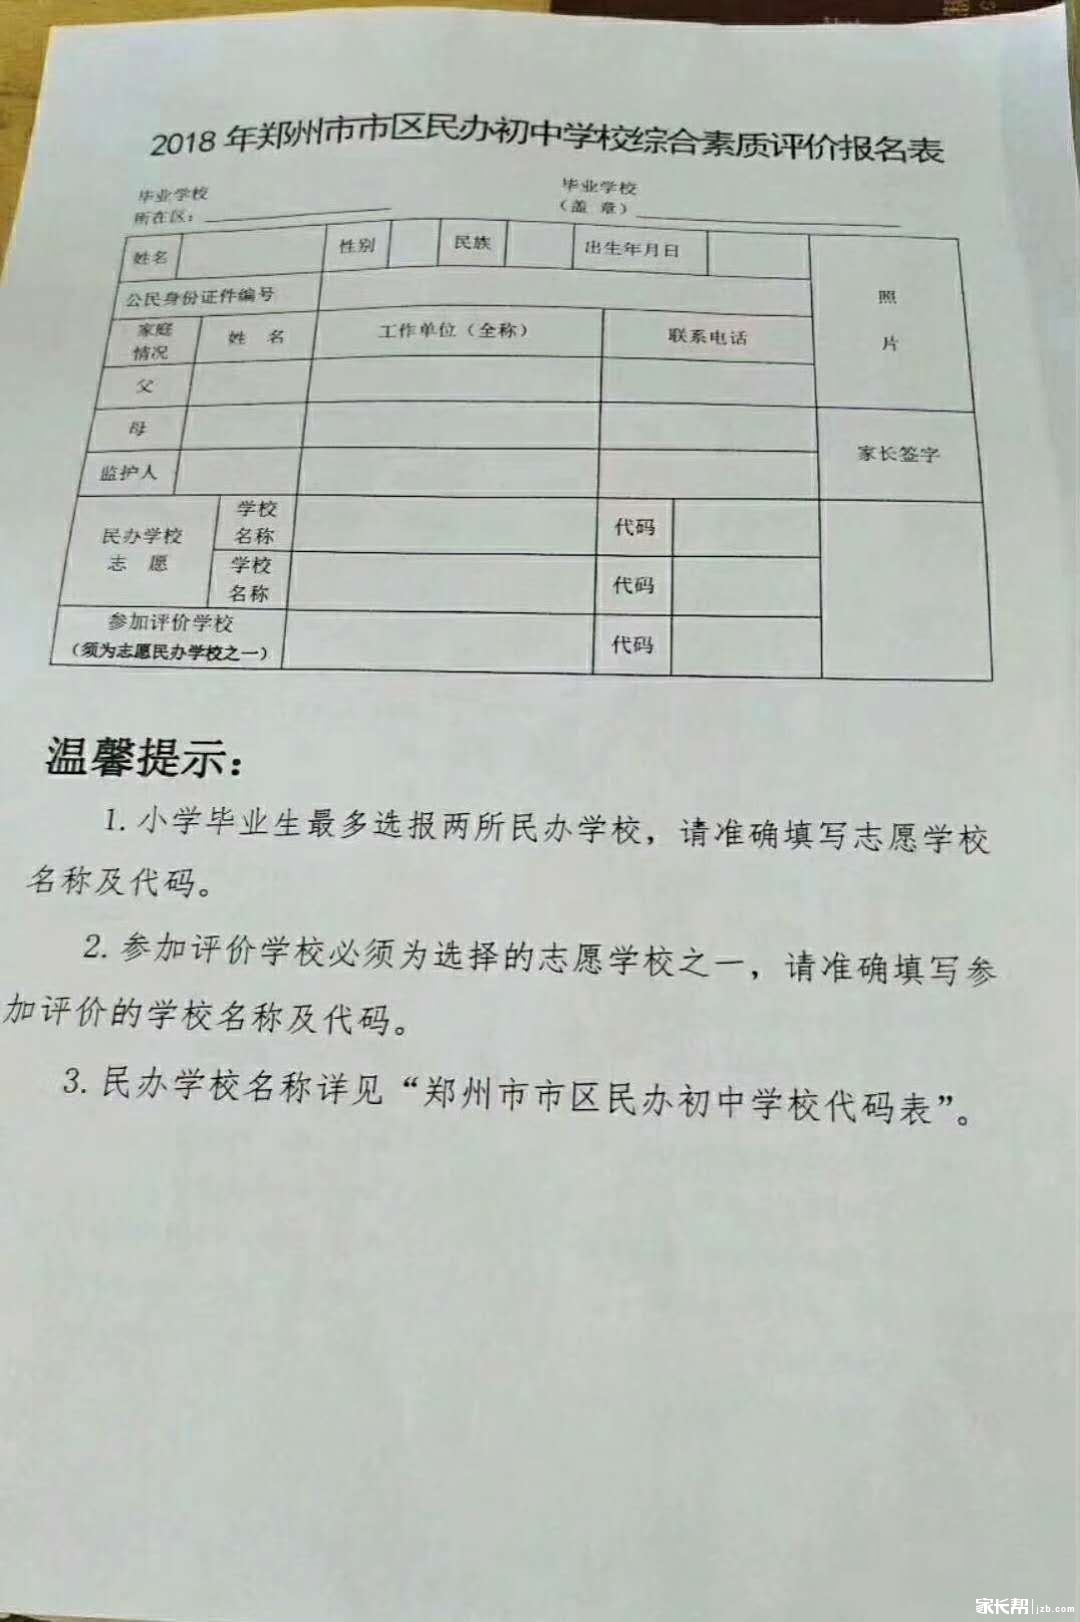 2018郑州民办初中报名表及民办初中学校代码表1